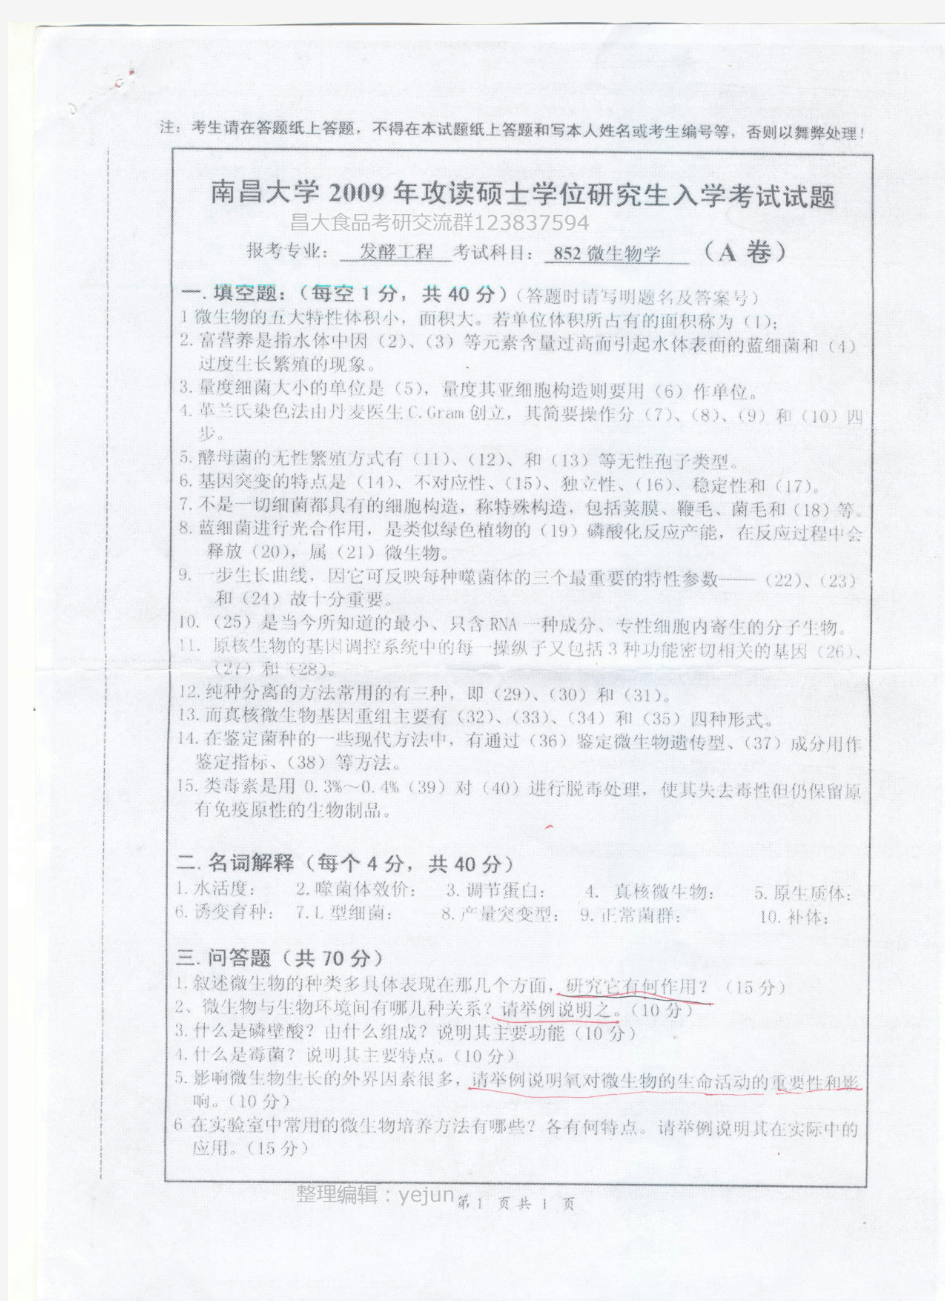 2009年南昌大学852微生物(发酵工程)考研试题